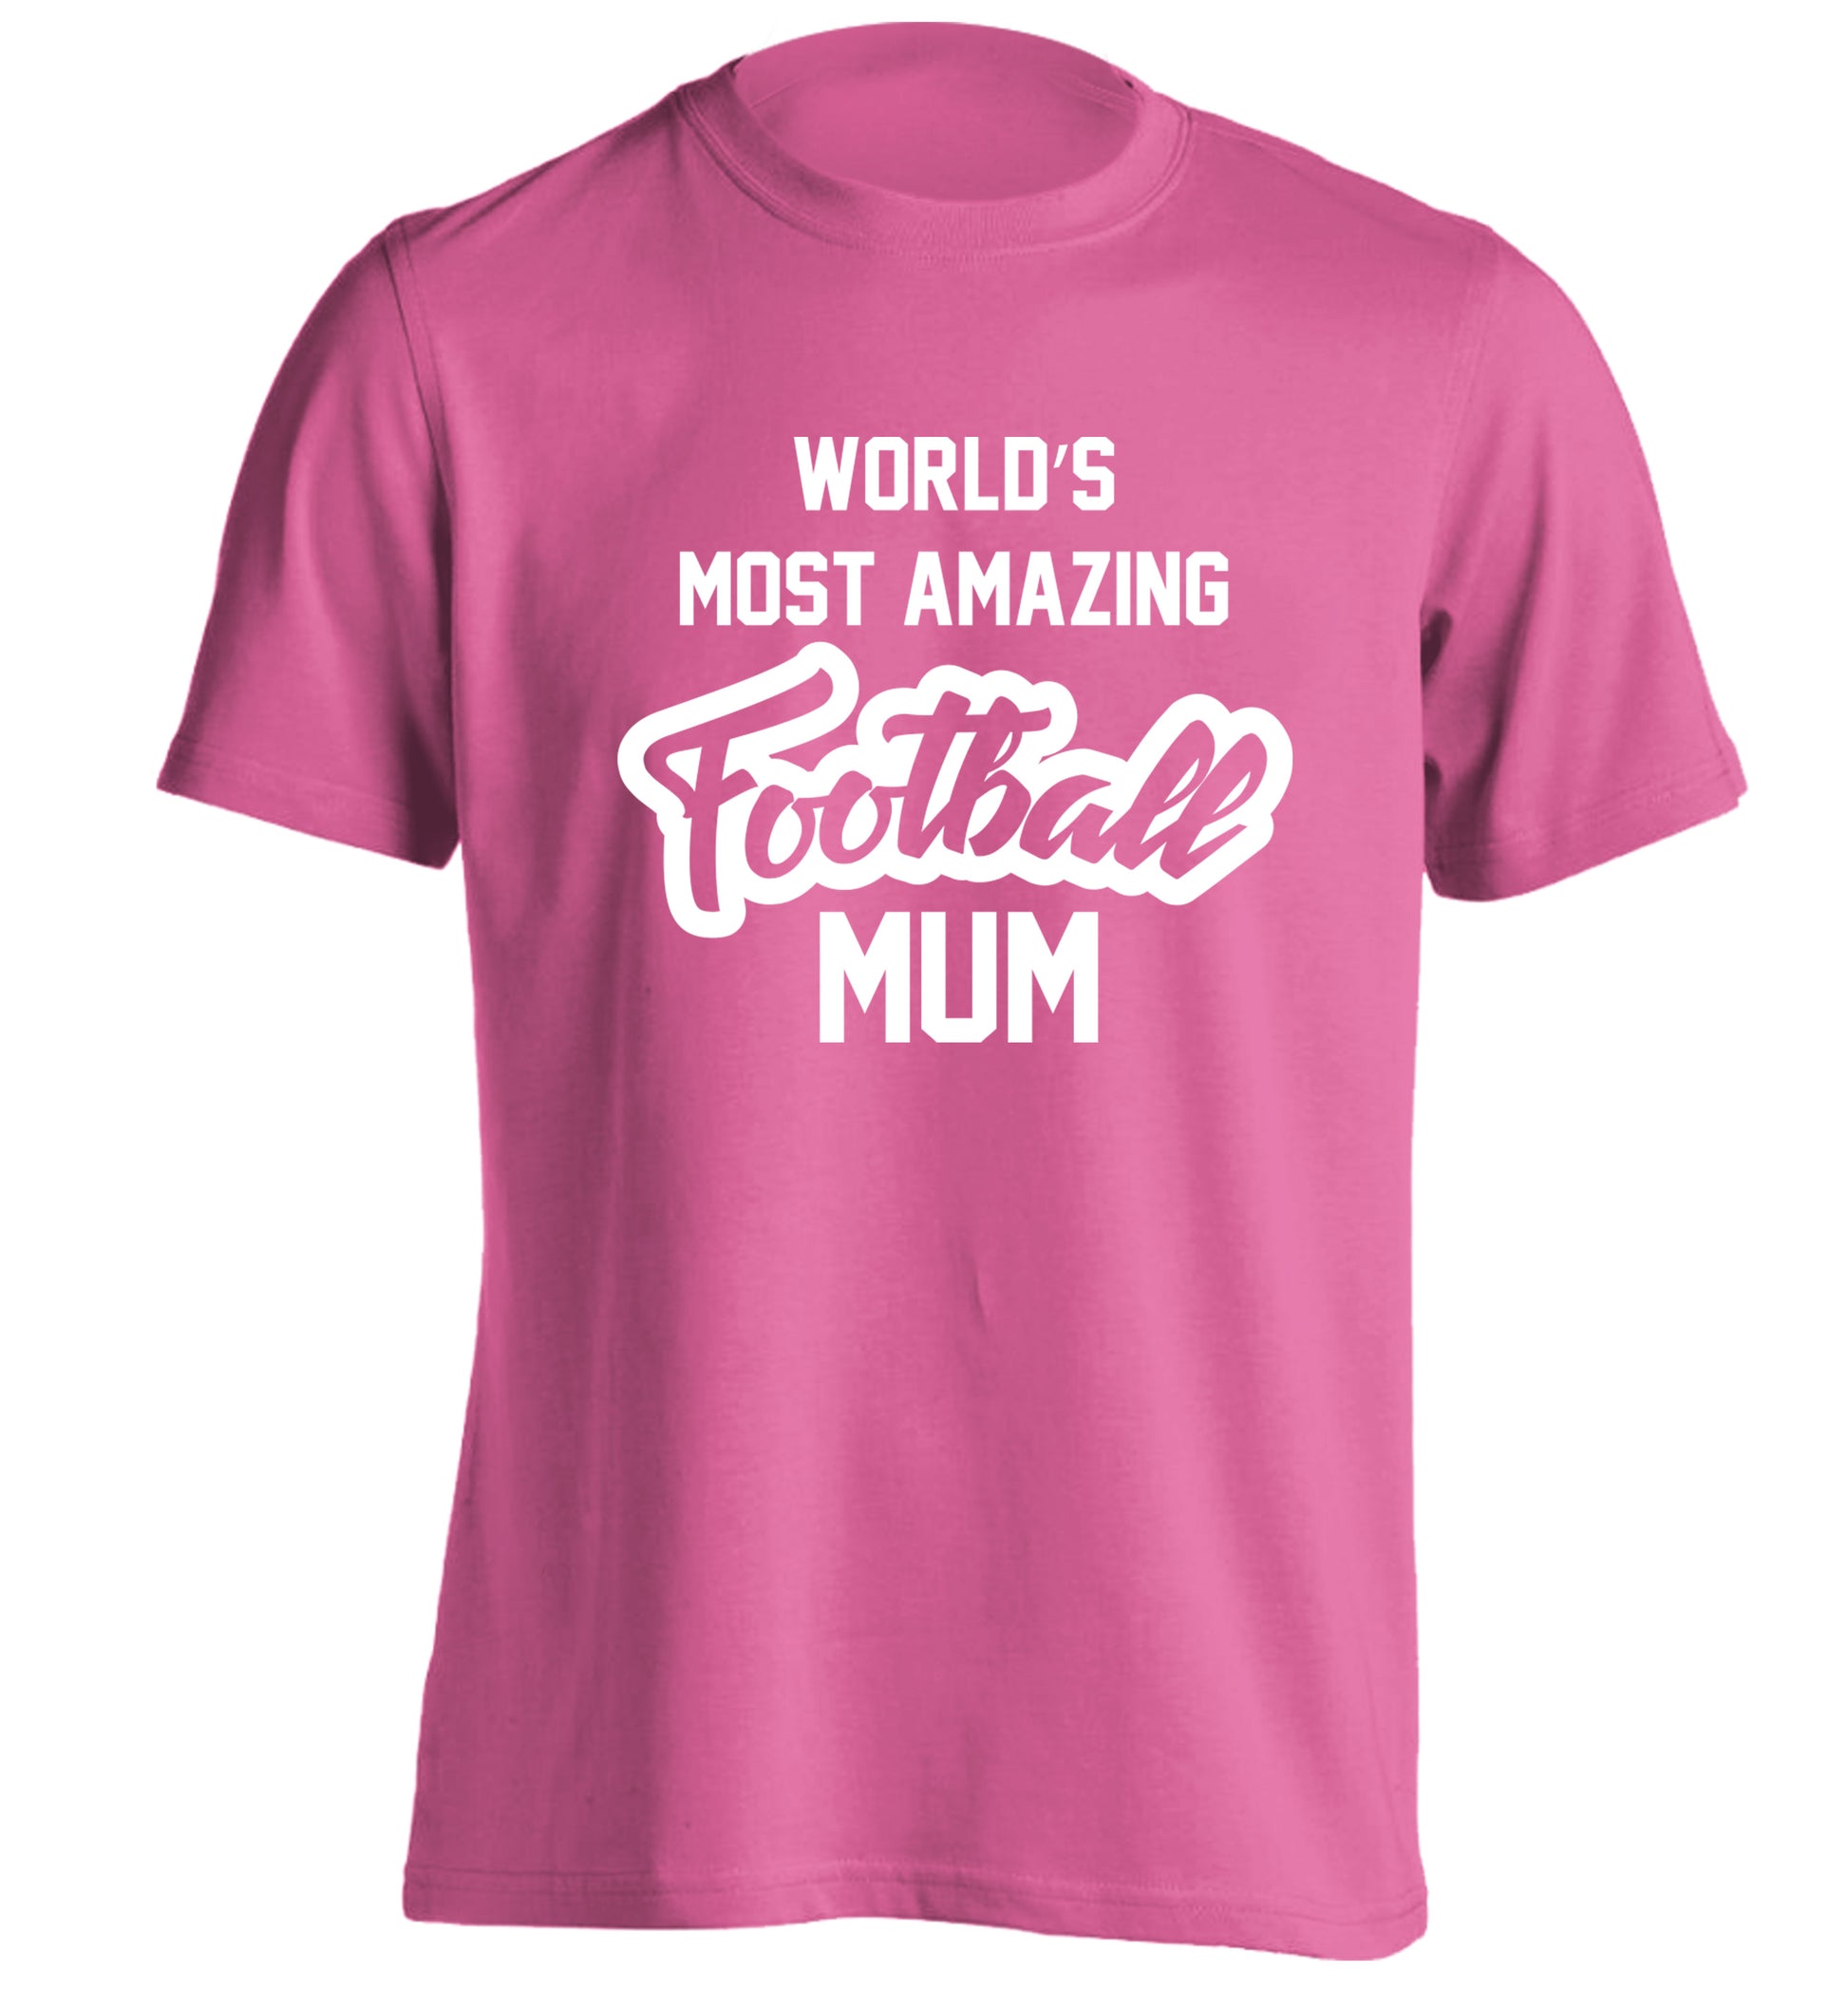 Worlds most amazing football mum adults unisexpink Tshirt 2XL